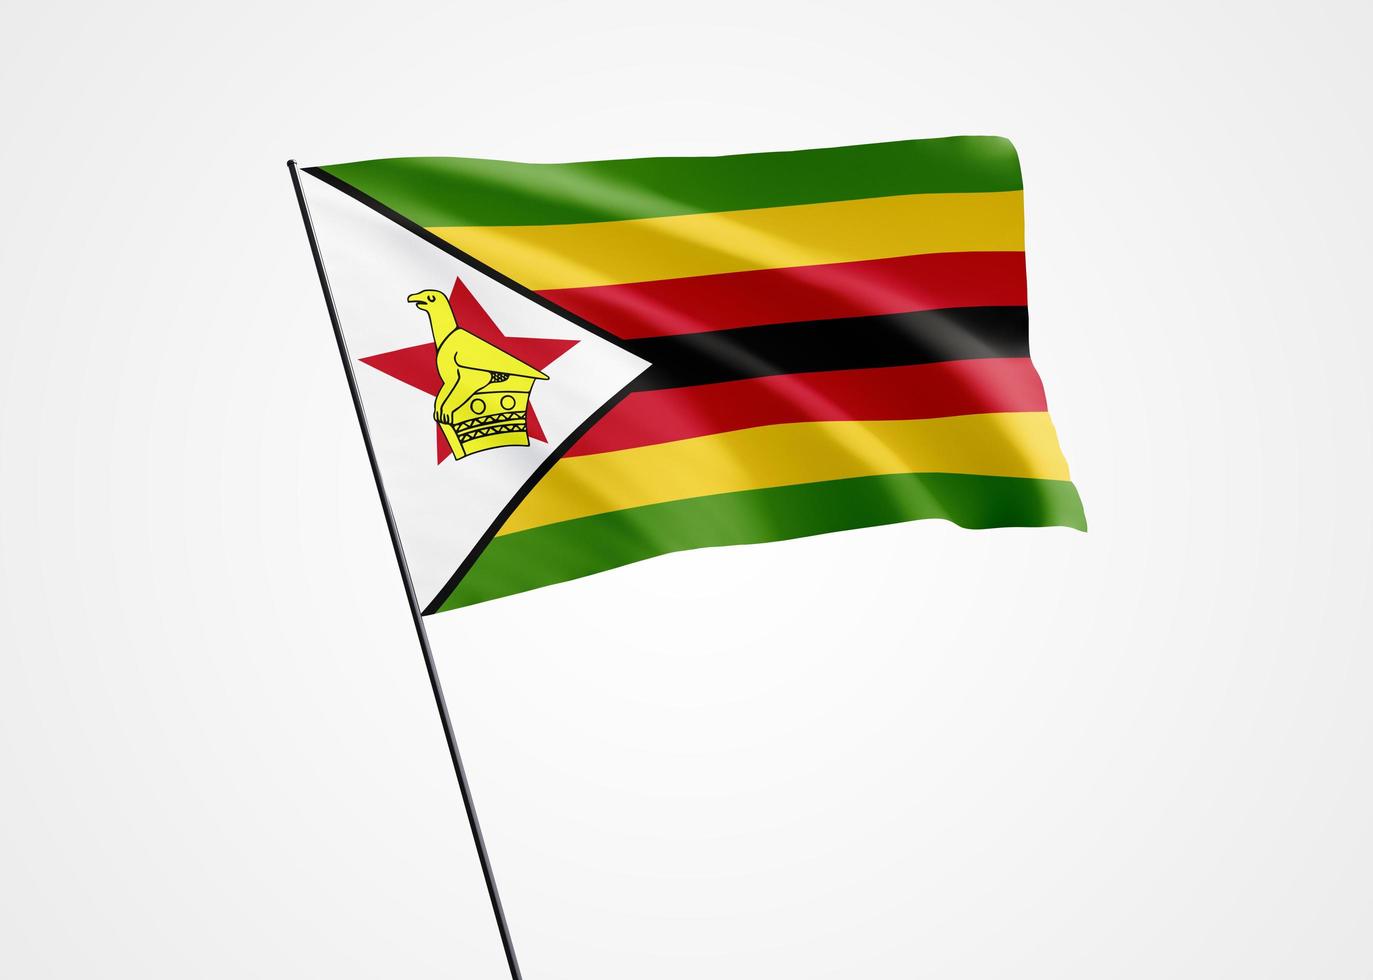 De vlag van Zimbabwe vliegt hoog op de witte geïsoleerde achtergrond. 18 april zimbabwe onafhankelijkheidsdag. wereld nationale vlag collectie wereld nationale vlag collectie foto